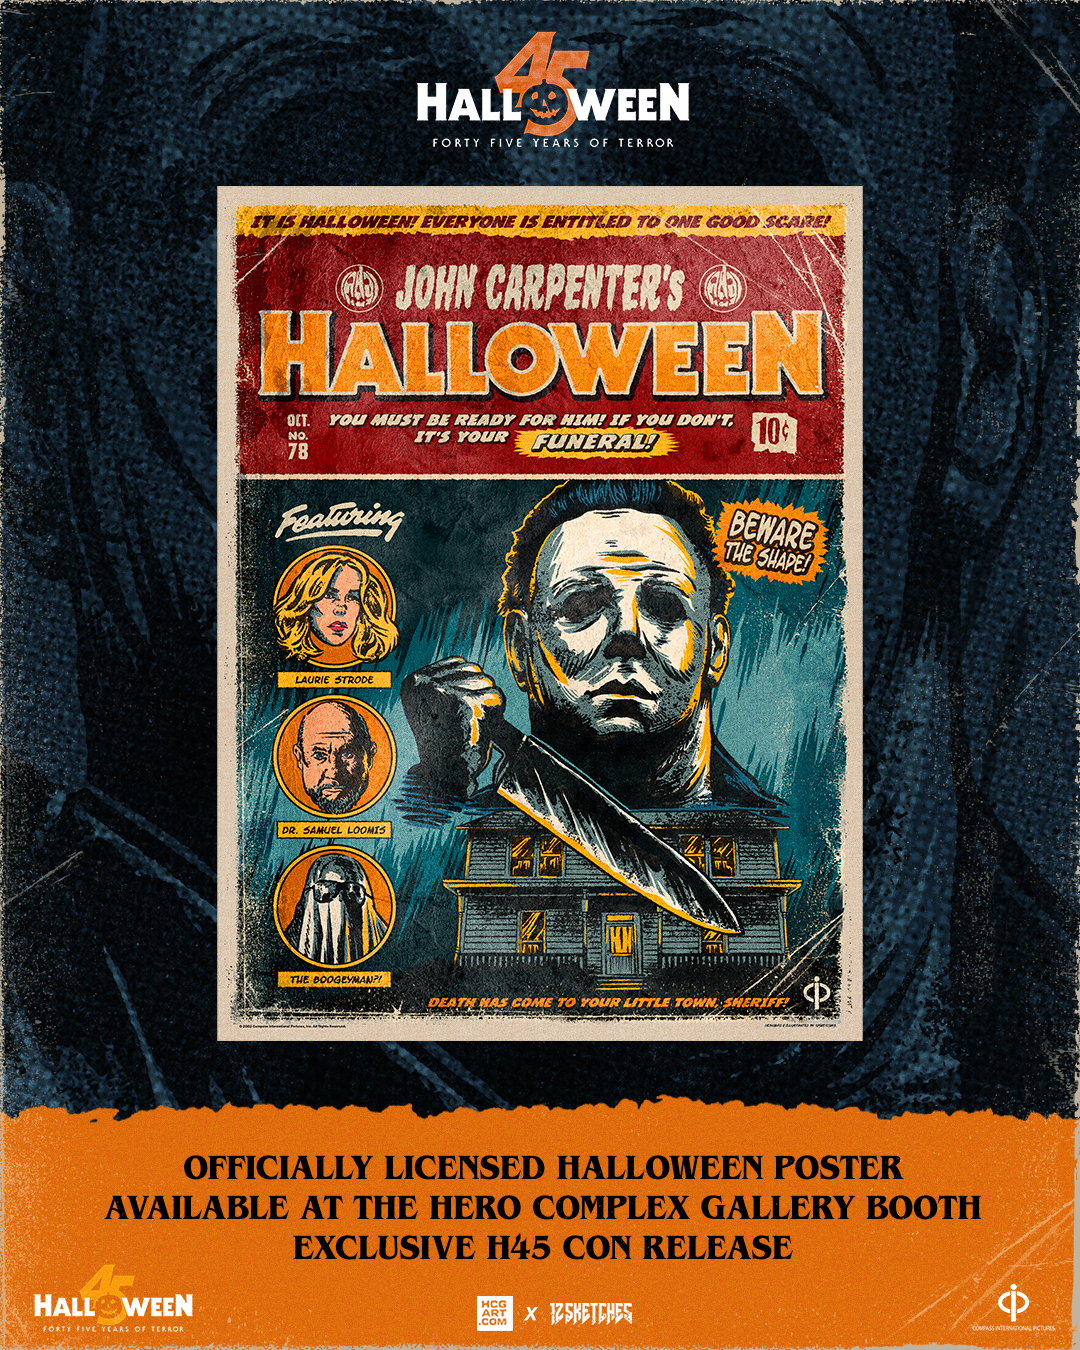 John Carpenter’s Halloween (1978) – officially licensed